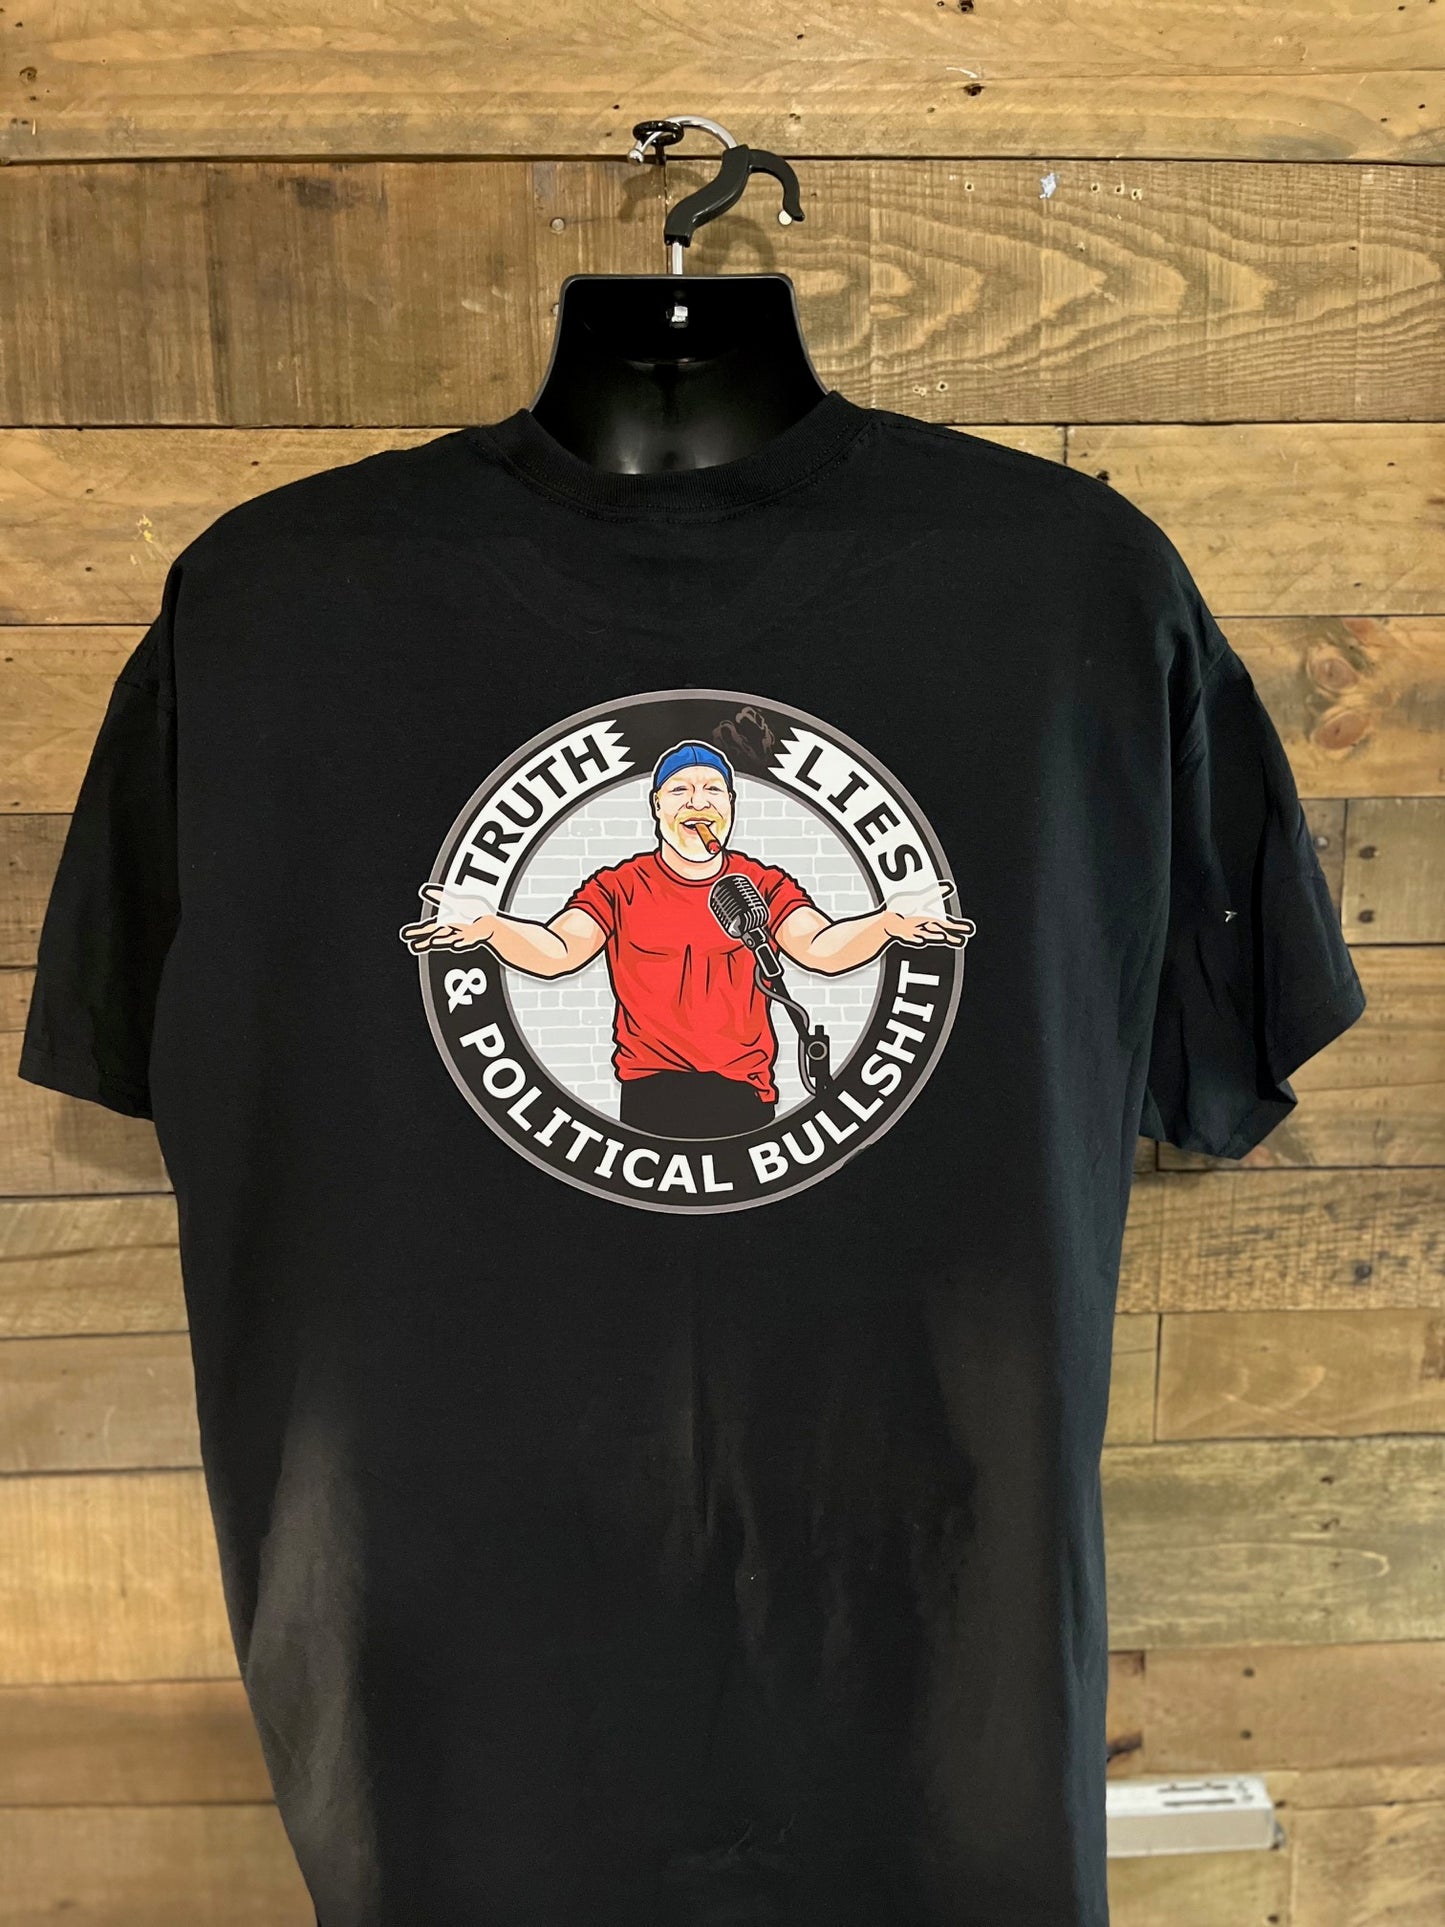 Truth Lies & Political Bulls*it Podcast T-Shirt